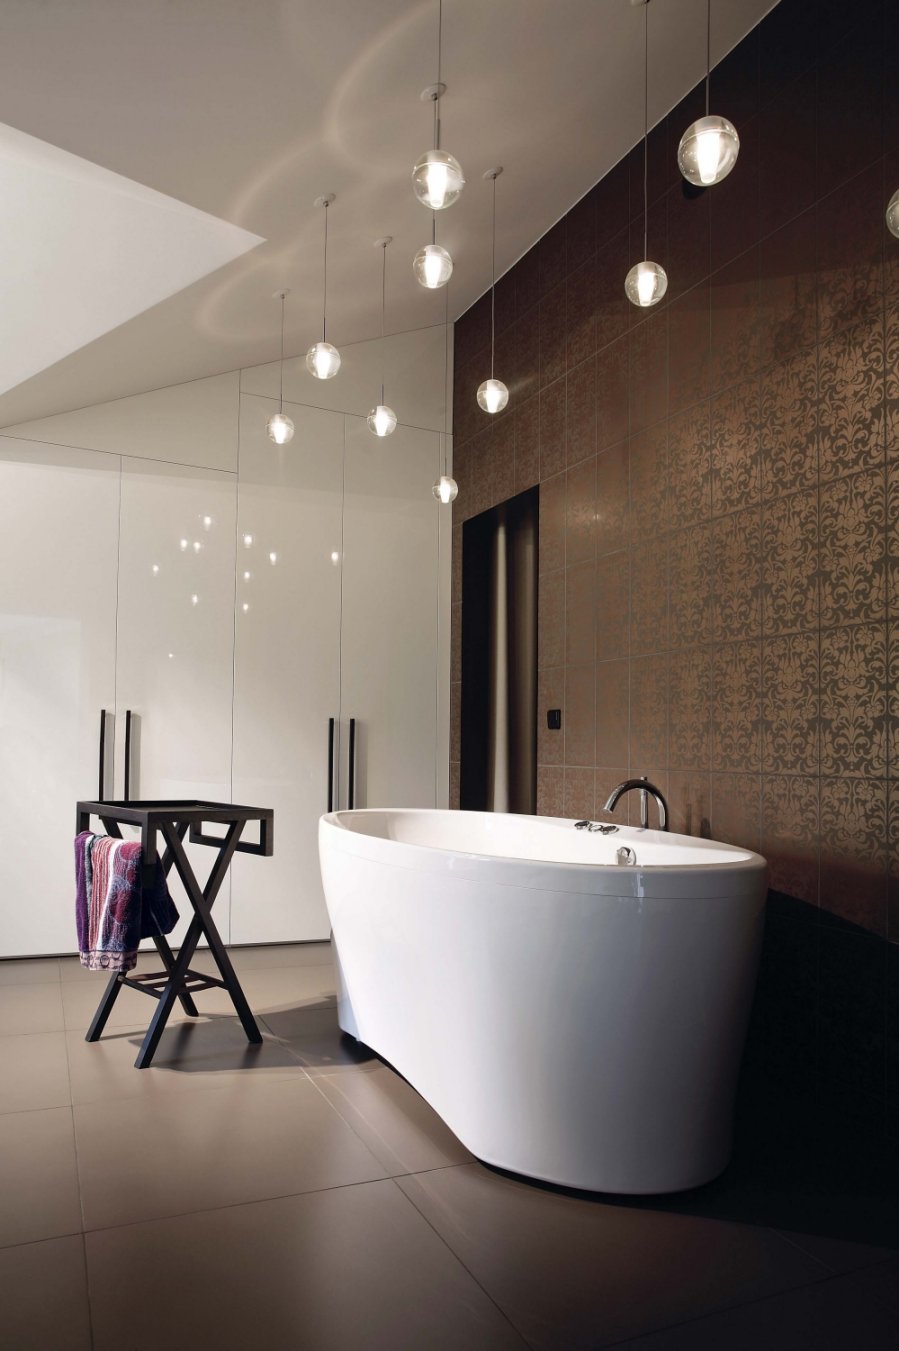 Modernaus dizaino vonios kambario interjerui puošnumo ir žaismingumo suteikia skirtingame aukštyje pakabinti permatomi šviečiantys burbulai, atrodantys tarsi vandens lašeliai.